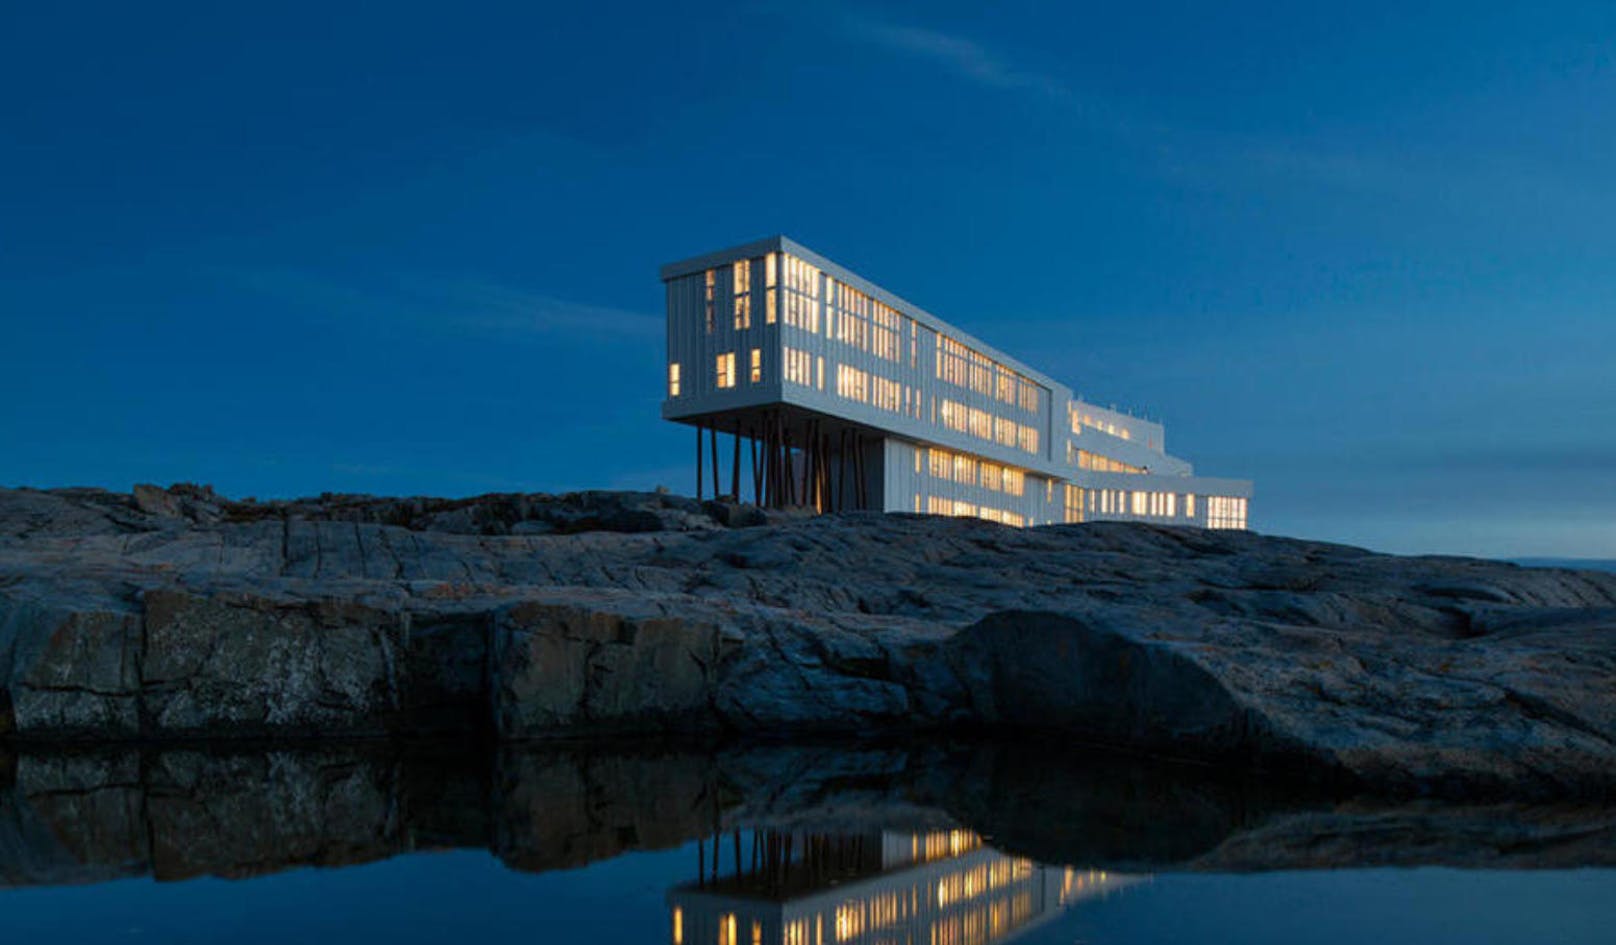 Ebenfalls nicht von schlechten Eltern ist die Lage des Fogo Island Inn im kanadischen Neufundland. In kompletter Abgeschiedenheit bietet der Traum vieler Architektur-Fans neben 29 individuell gestalteten Zimmern auch eine Sauna, eine Kunstgalerie und sogar ein Kino. <a href="http://www.fogoislandinn.ca/">www.fogoislandinn.ca</a>